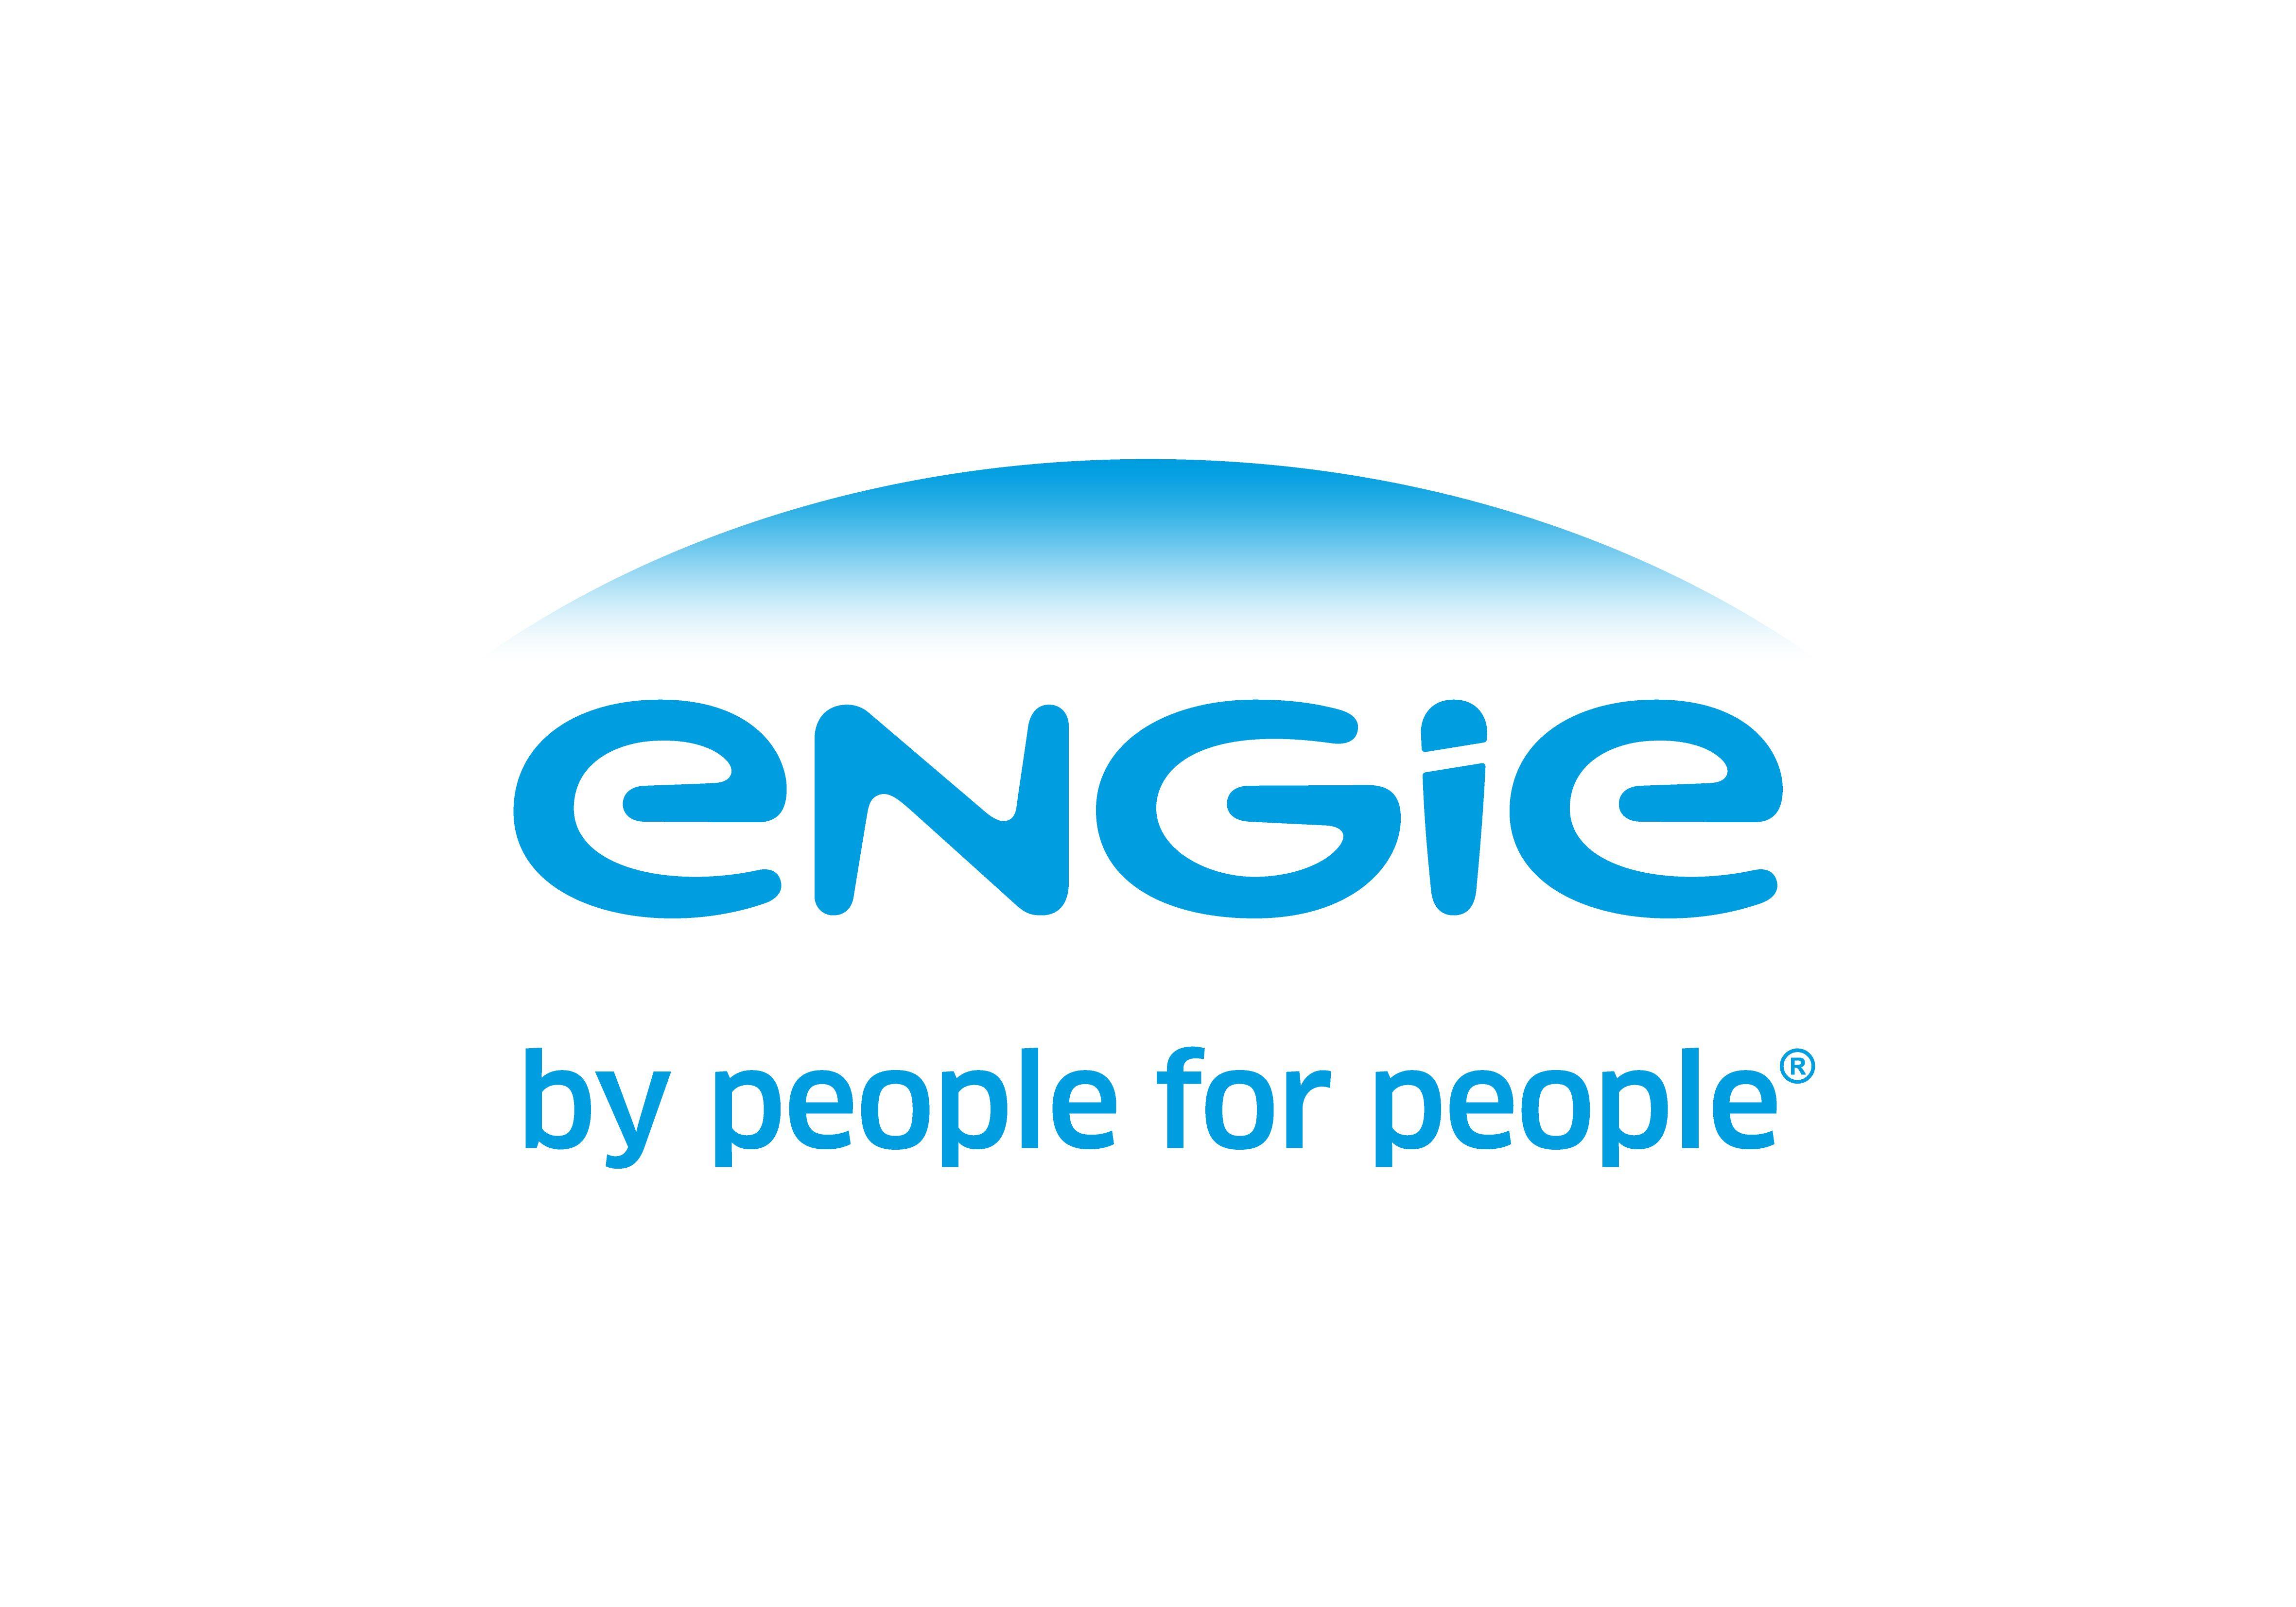 Suez Logo - Le nouveau logo ENGIE! The new ENGI logo! | GDF SUEZ devient ENGIE ...